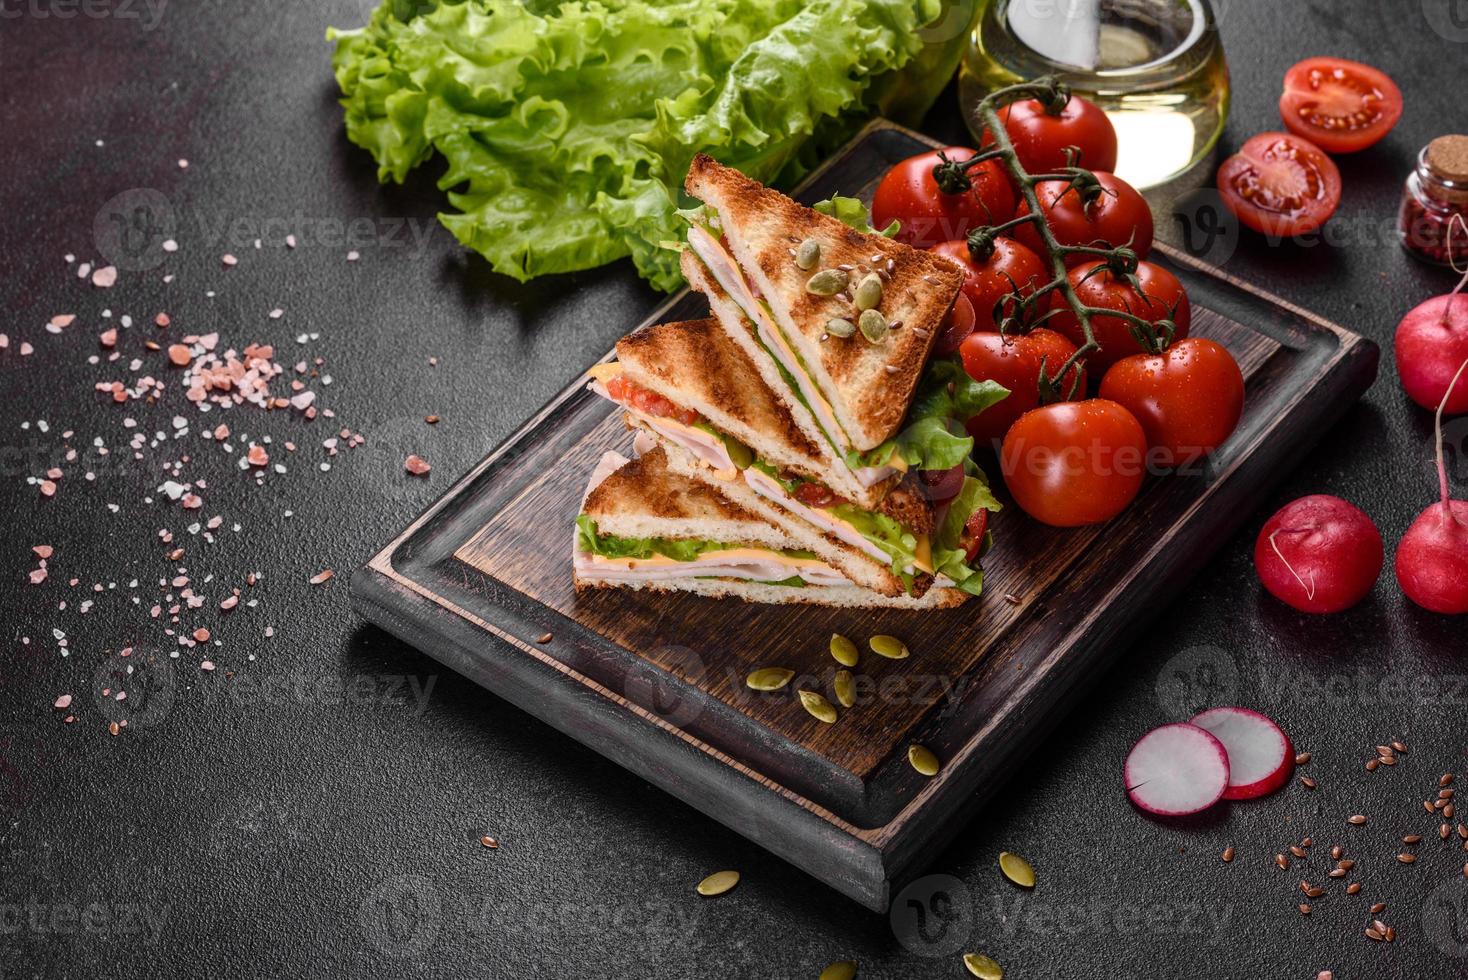 heerlijk broodje met knapperige toast, ham, sla en tomaten and foto